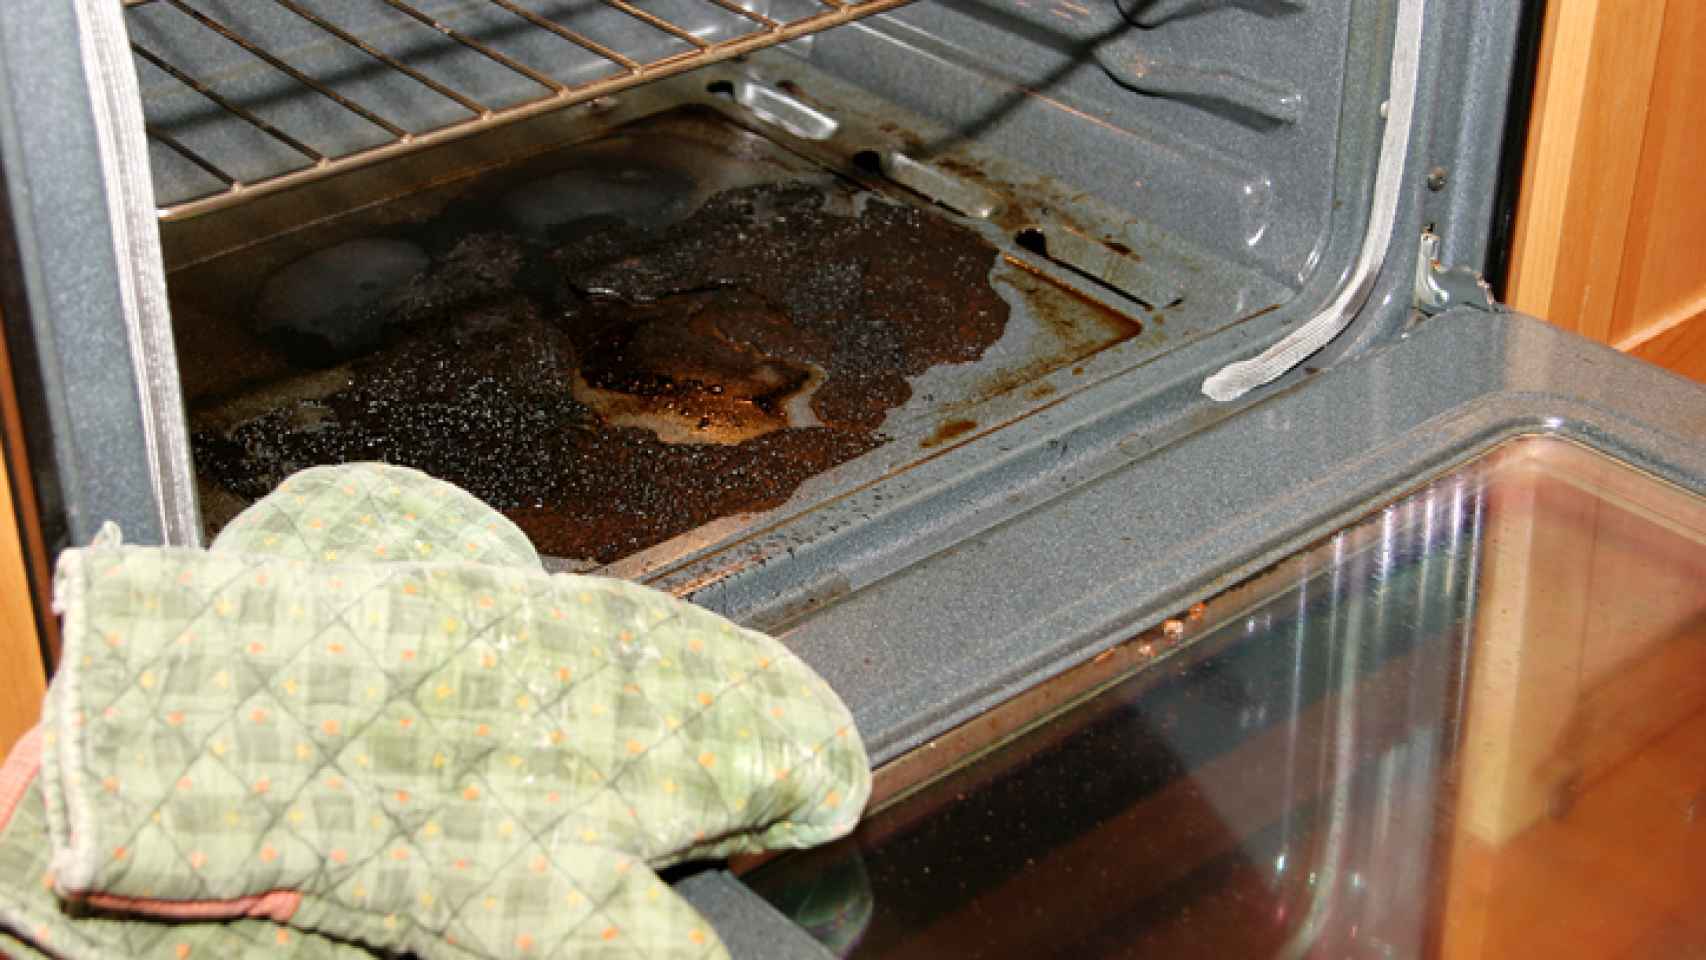 Trucos para limpiar el horno sin productos químicos.